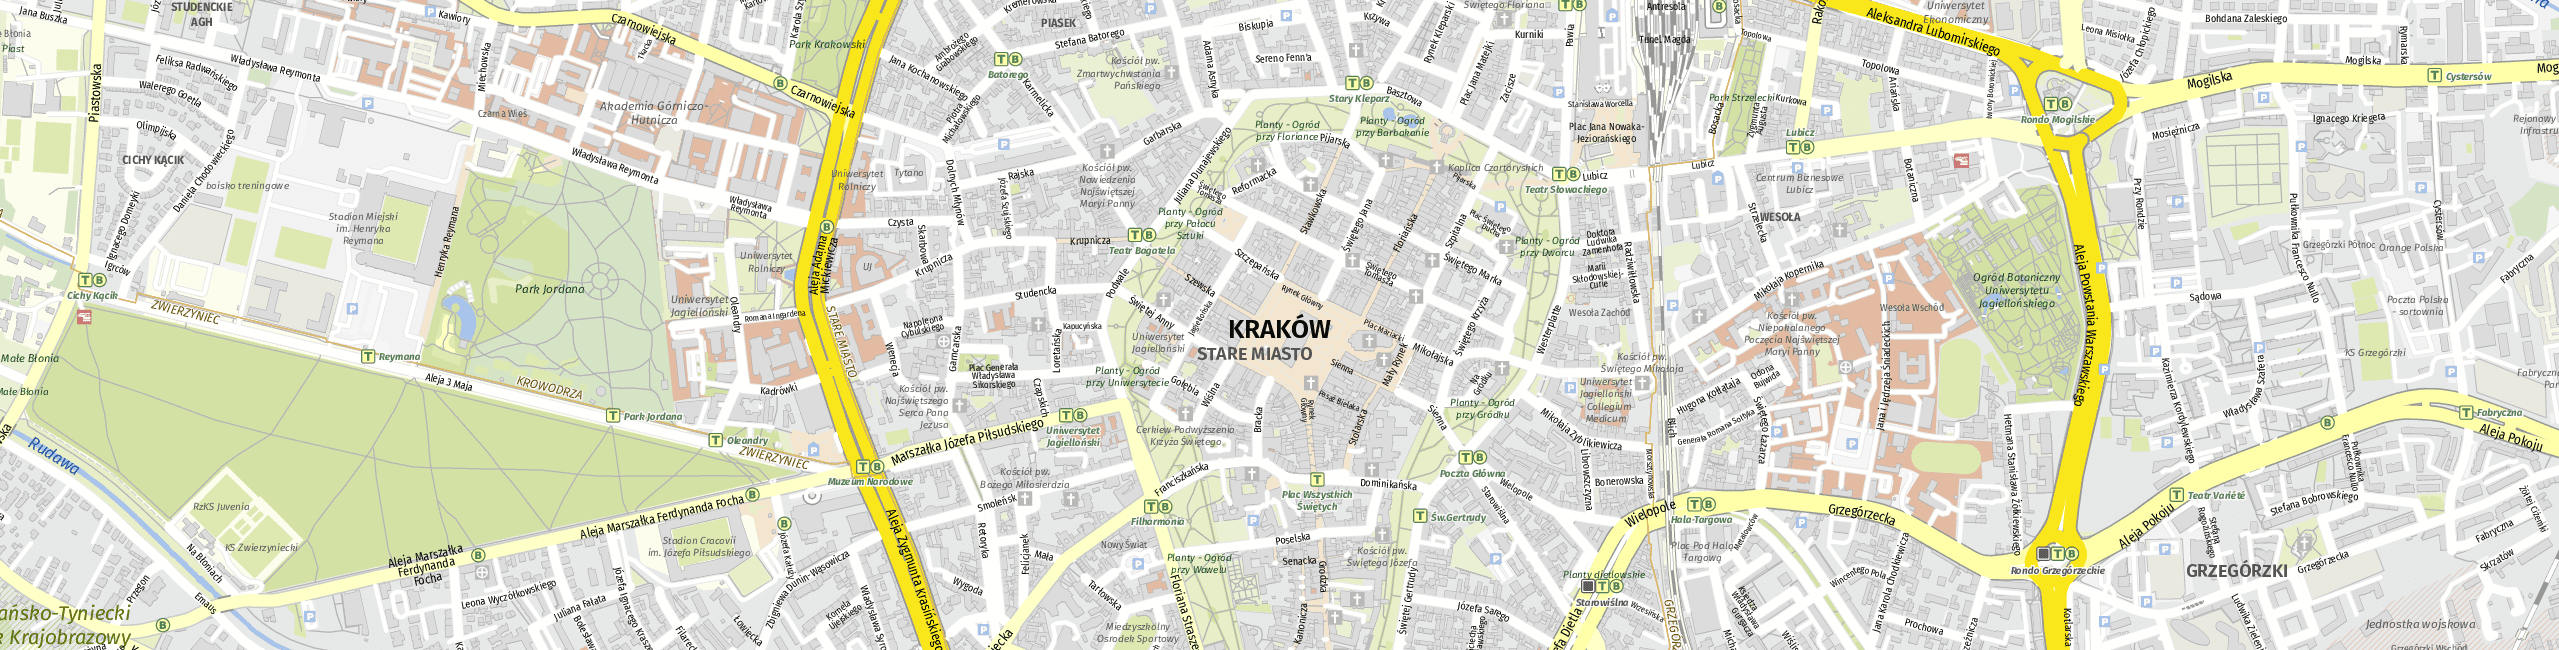 Stadtplan Krakow zum Downloaden.